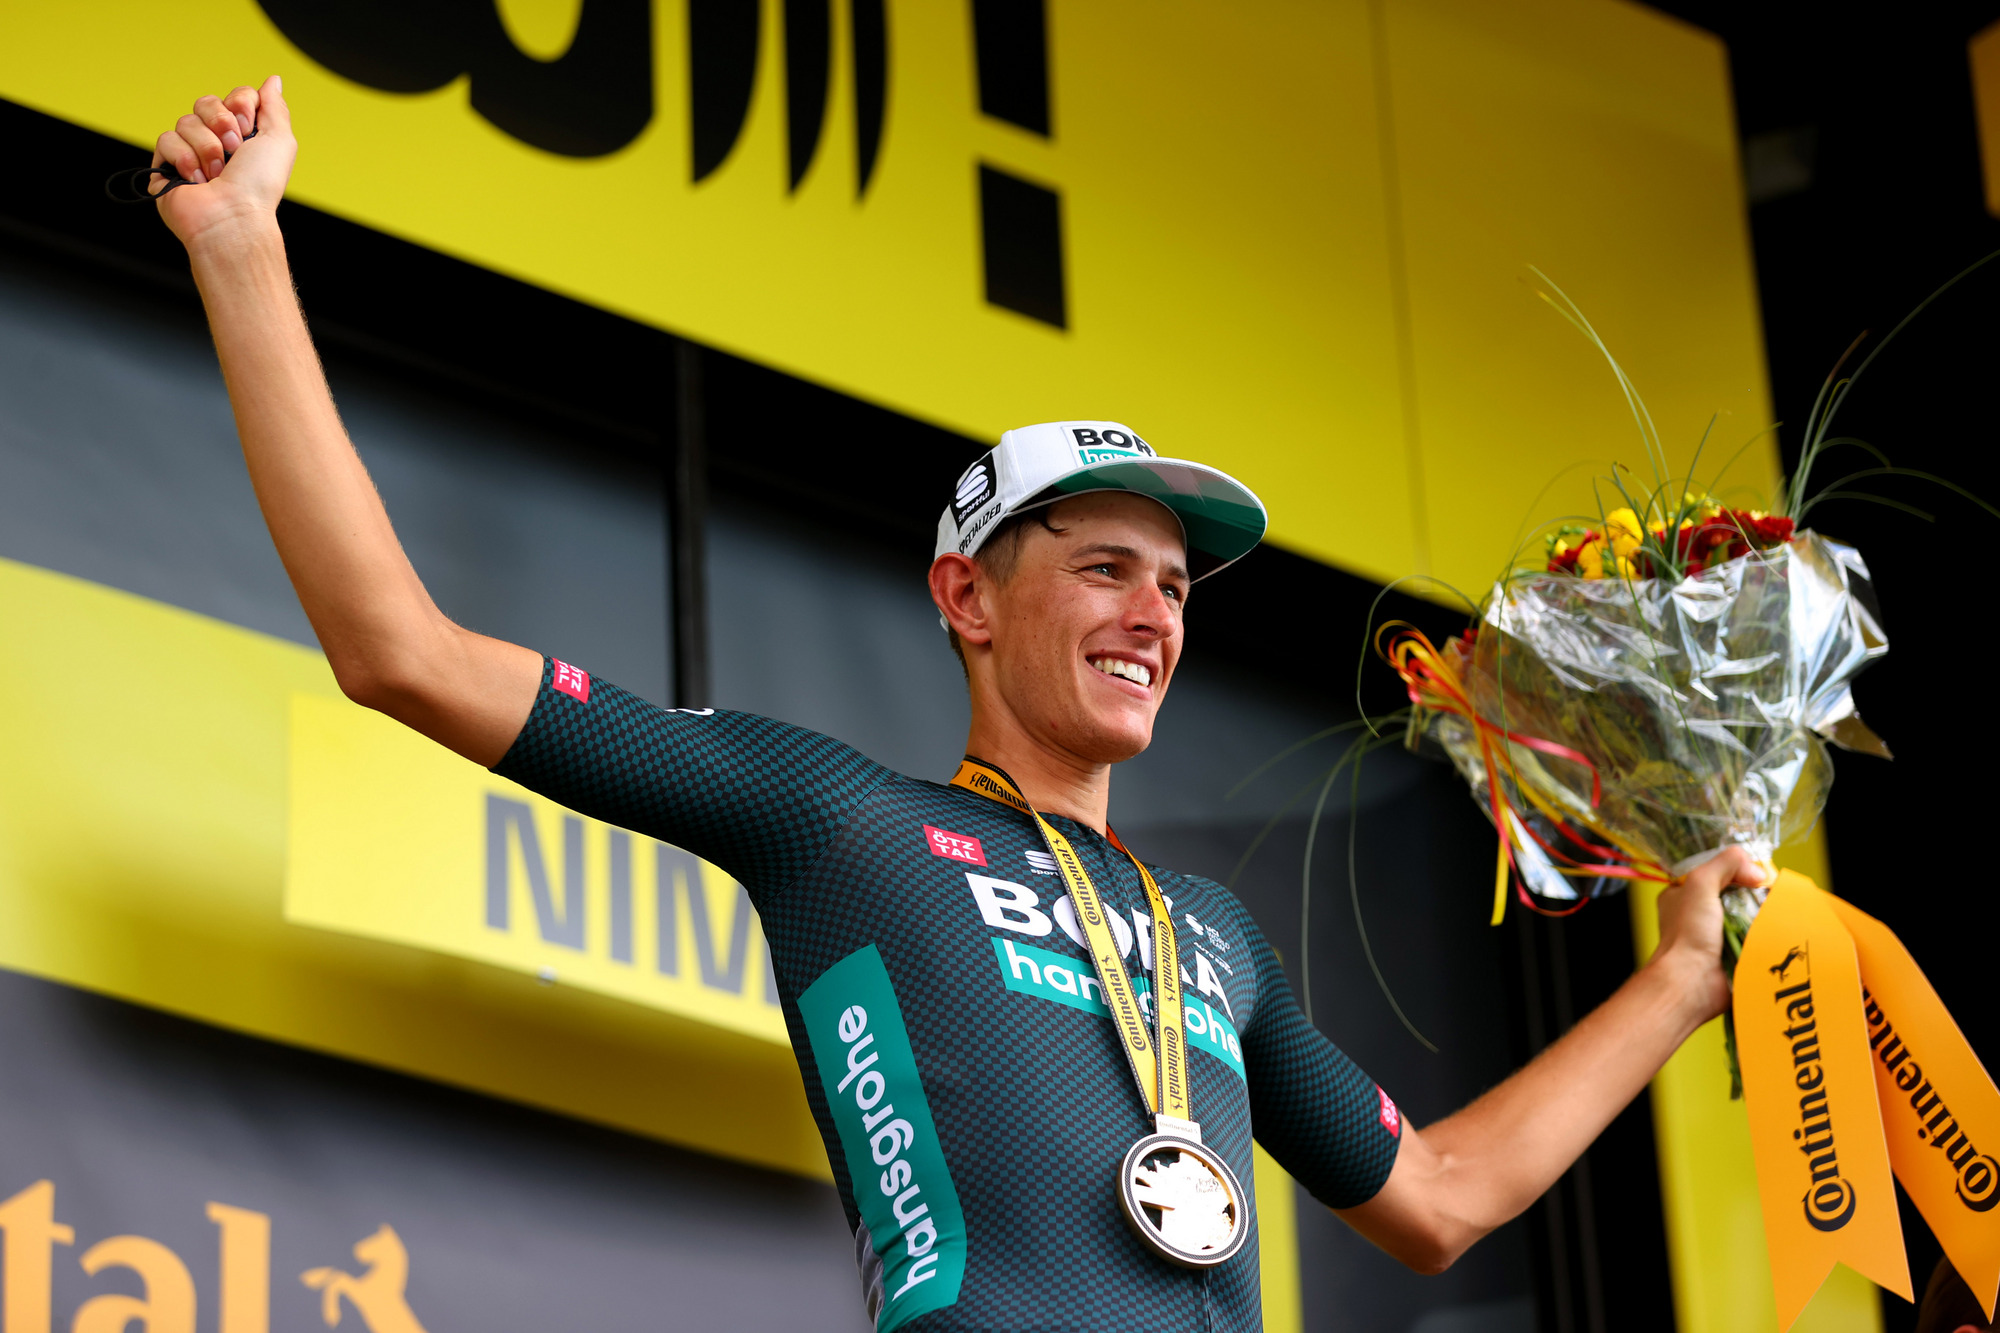 Politt aprovecha la oportunidad que le ofrece la salida anticipada de Sagan del Tour de Francia